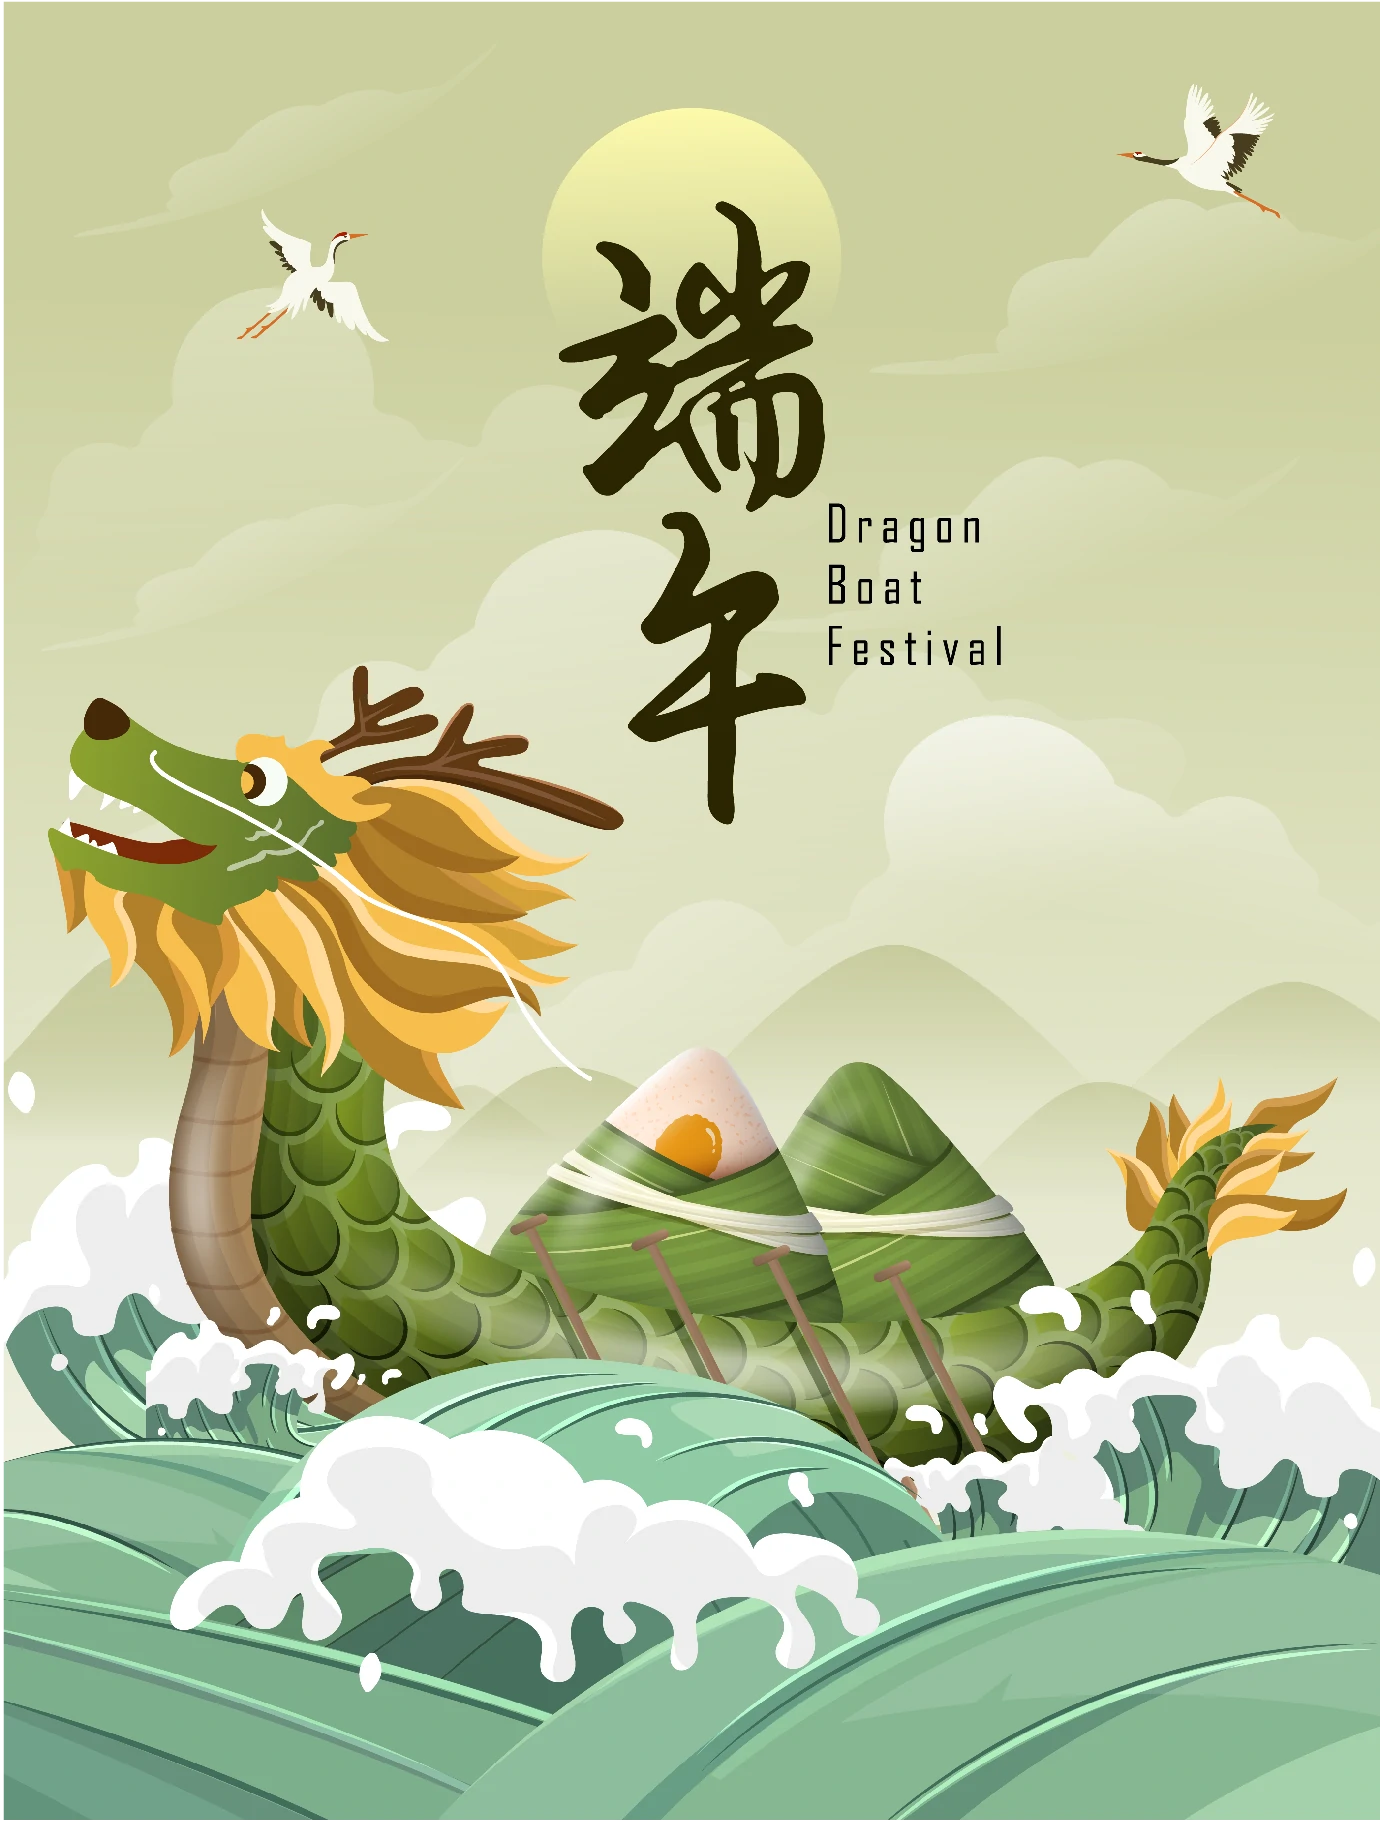 中国传统节日端午节端午安康赛龙舟包粽子插画海报AI矢量设计素材【015】